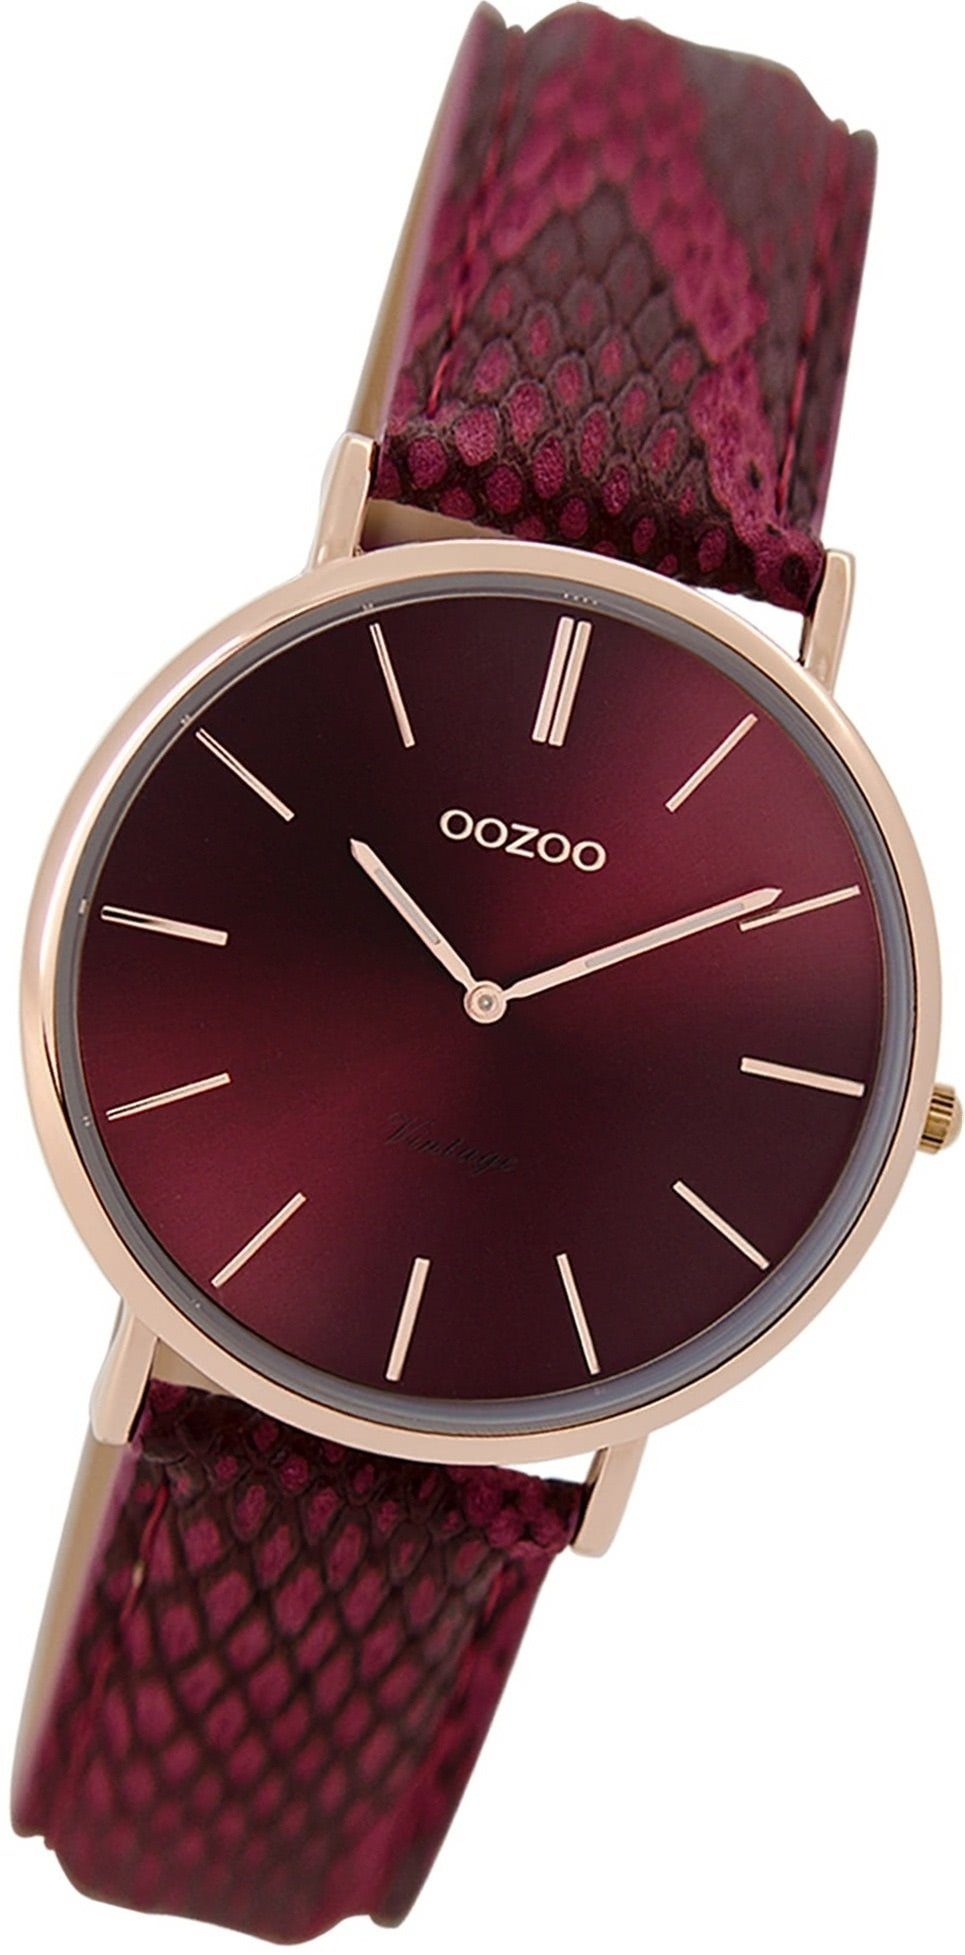 OOZOO Quarzuhr Oozoo Damen Armbanduhr Damenuhr mittel rot, Lederarmband rundes Gehäuse, 32mm) Vintage (ca. Analog